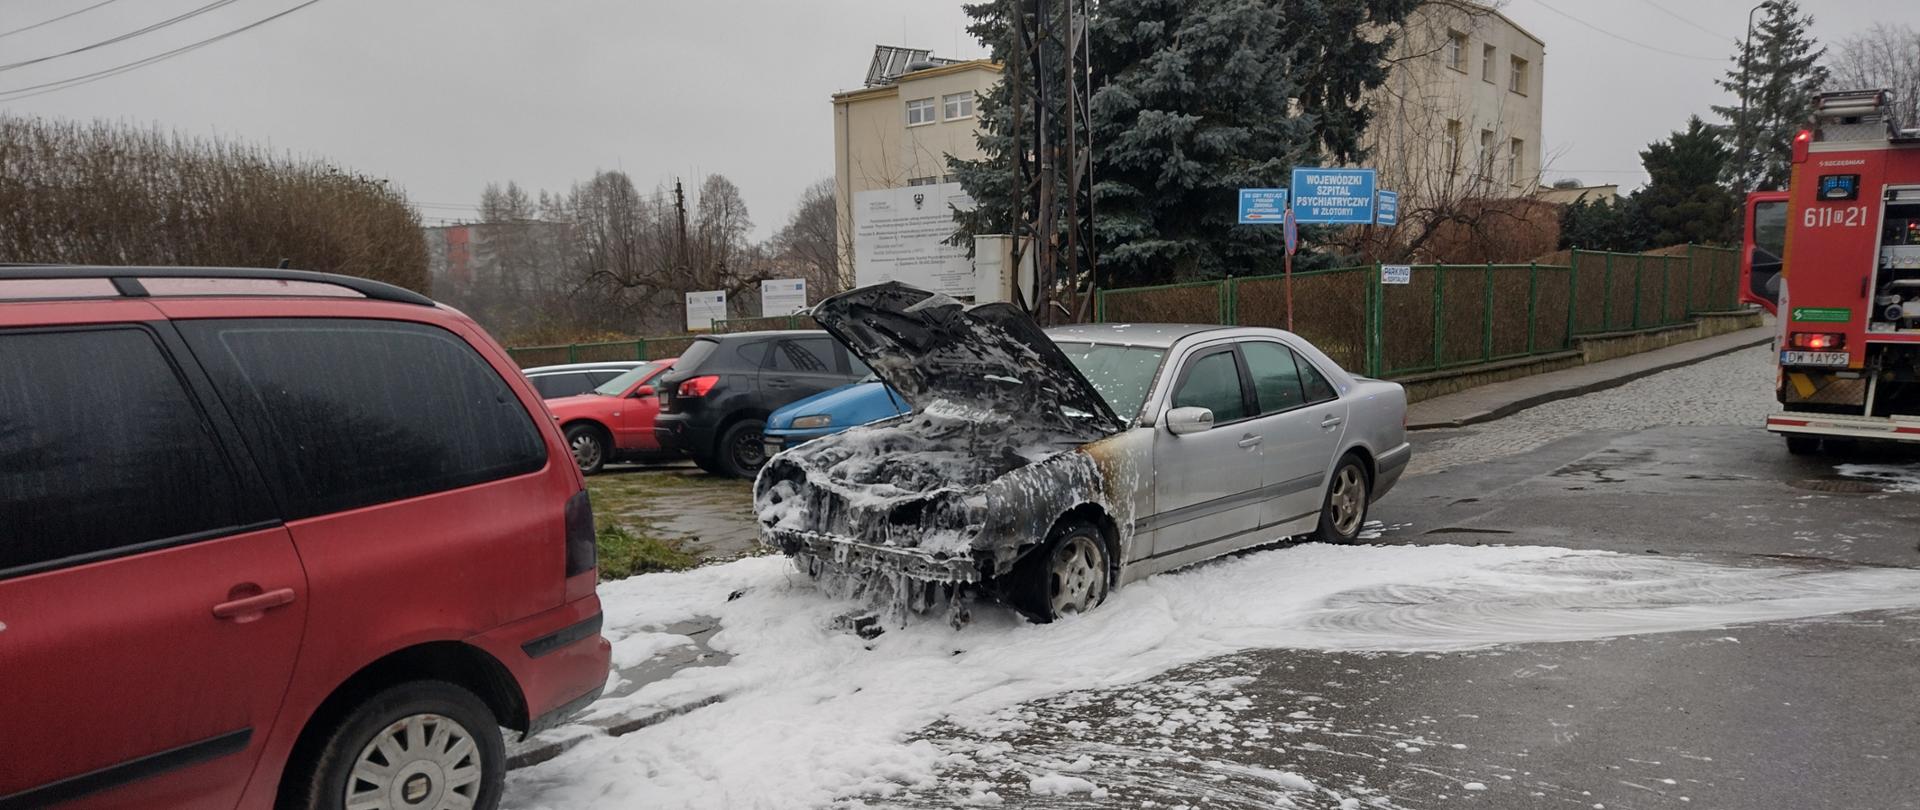 stojący na ulicy spalony do połowy srebrny samochód osobowy zalany pianą gaśniczą, po prawe stronie widoczny strażacki samochód